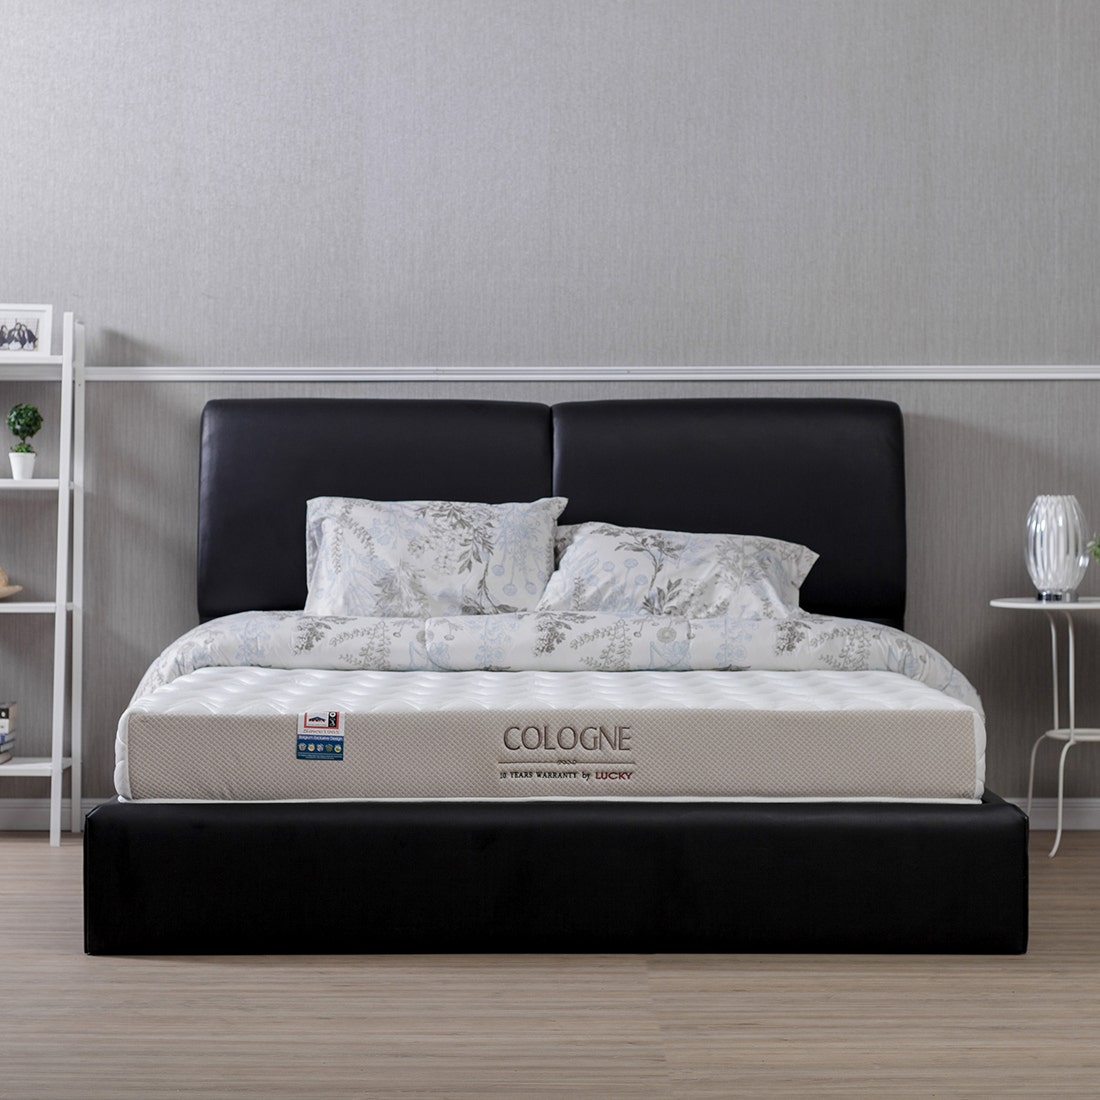 39001286-mattress-bedding-mattresses-foam-mattresses-31